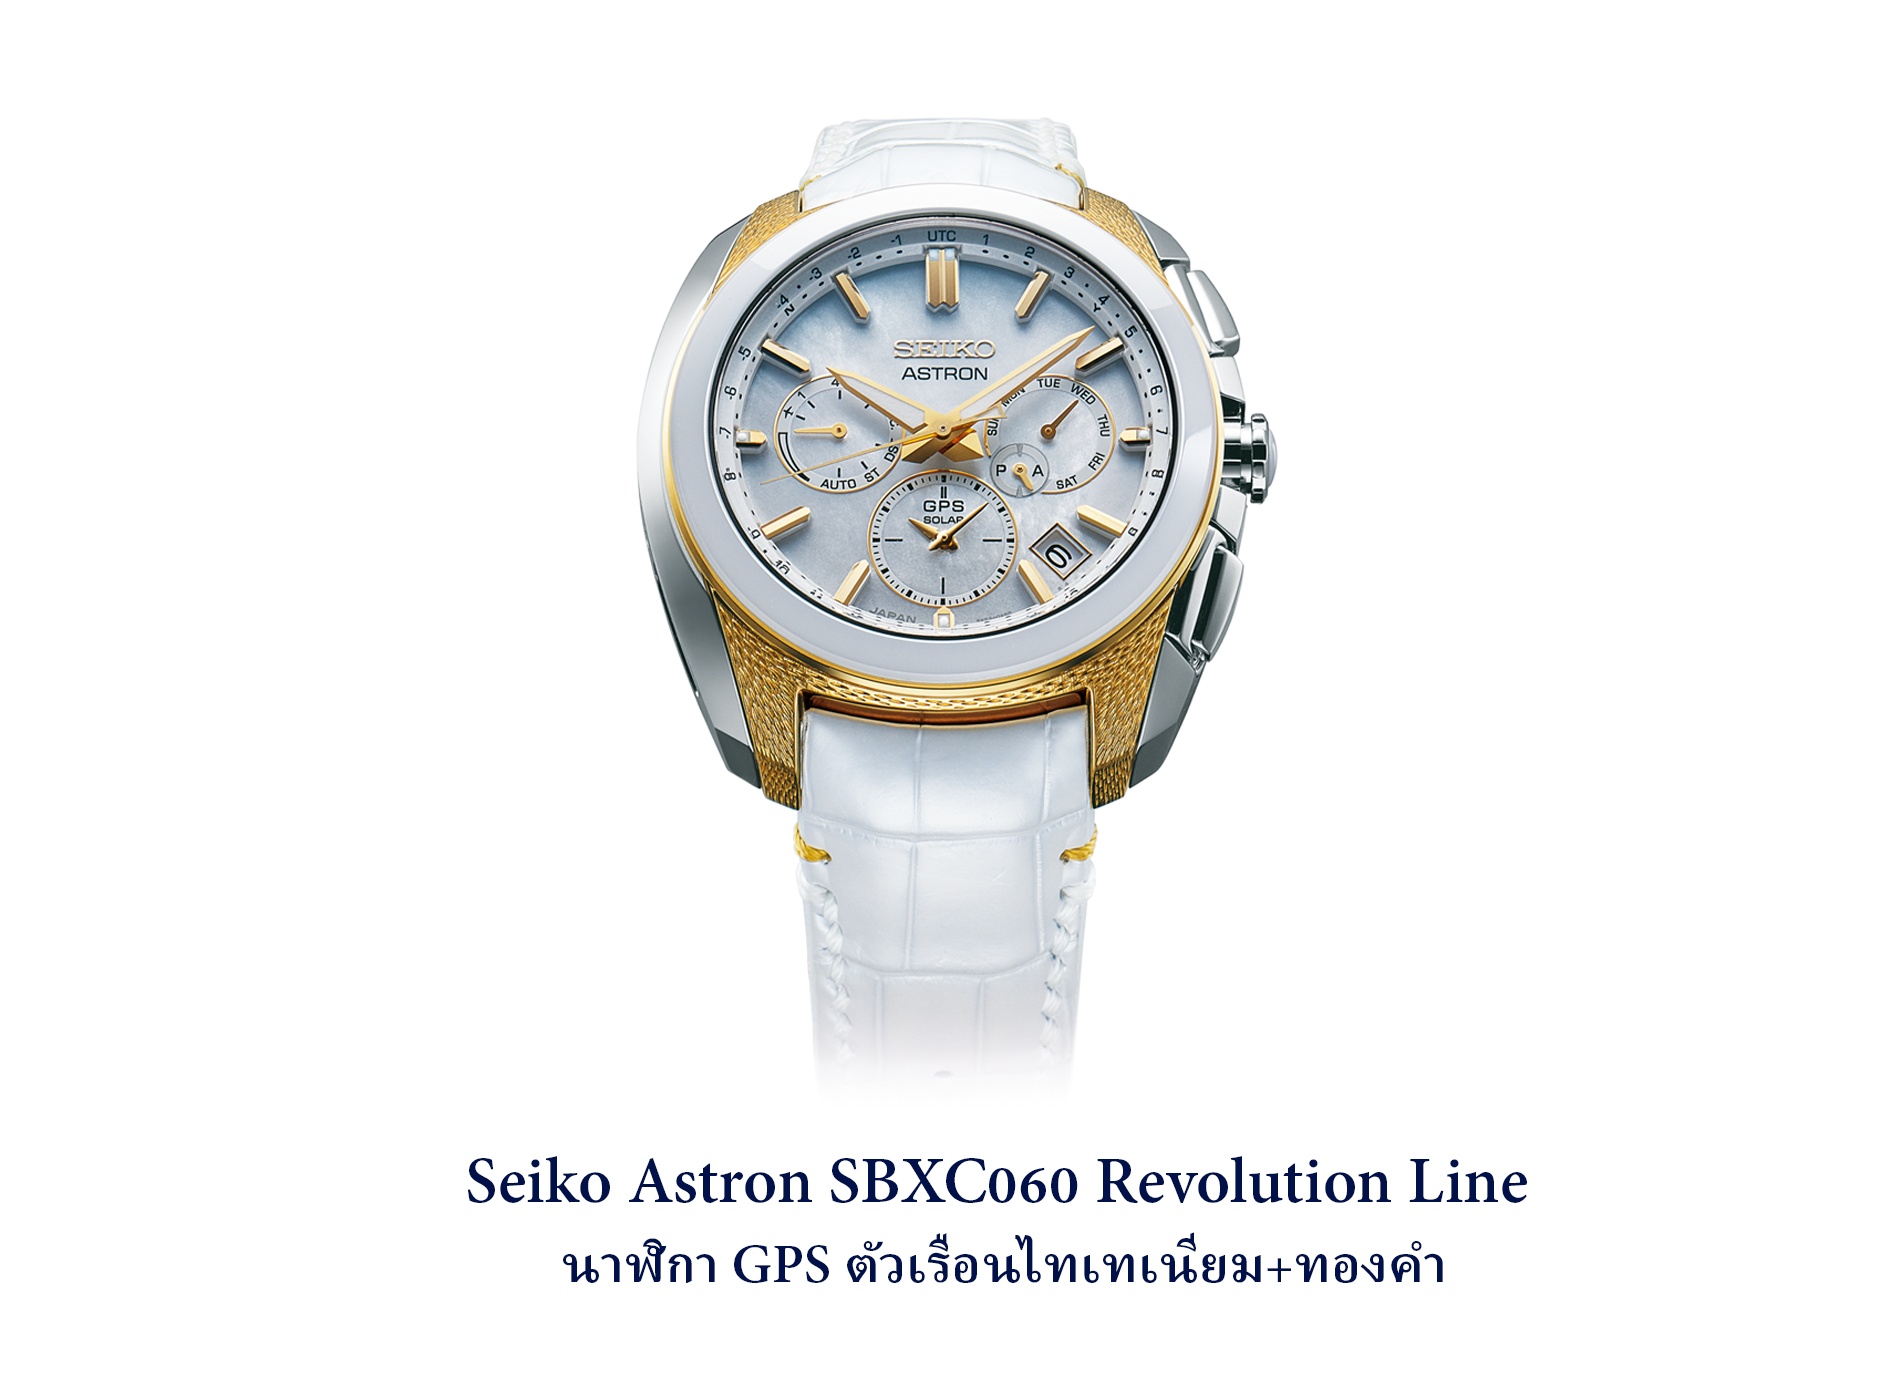 Seiko Astron SBXC060 Revolution Line